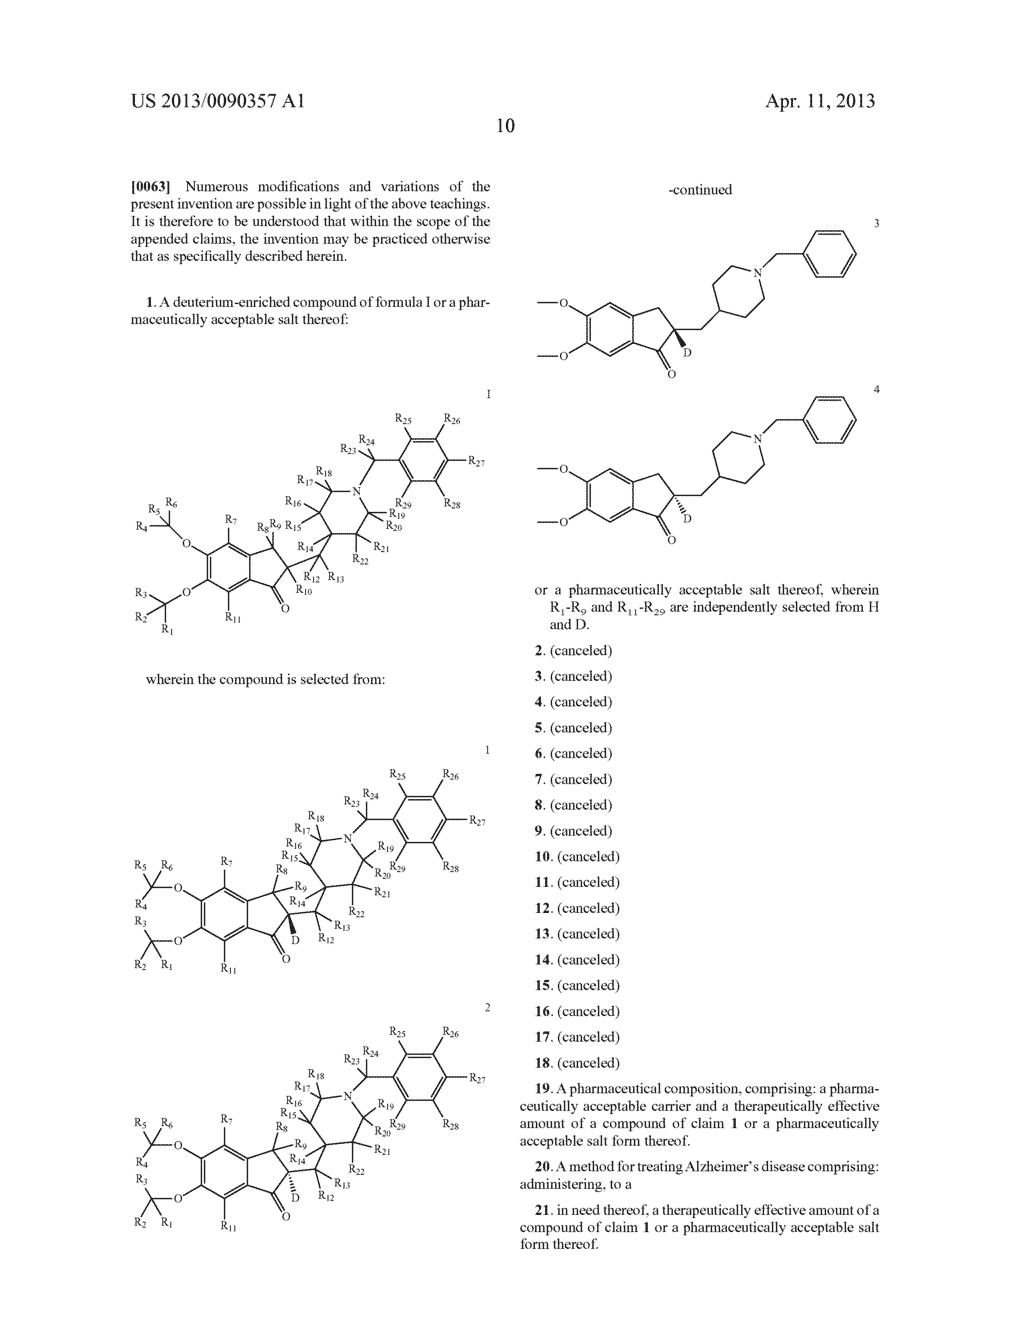 DEUTERIUM-ENRICHED DONEPEZIL - diagram, schematic, and image 11